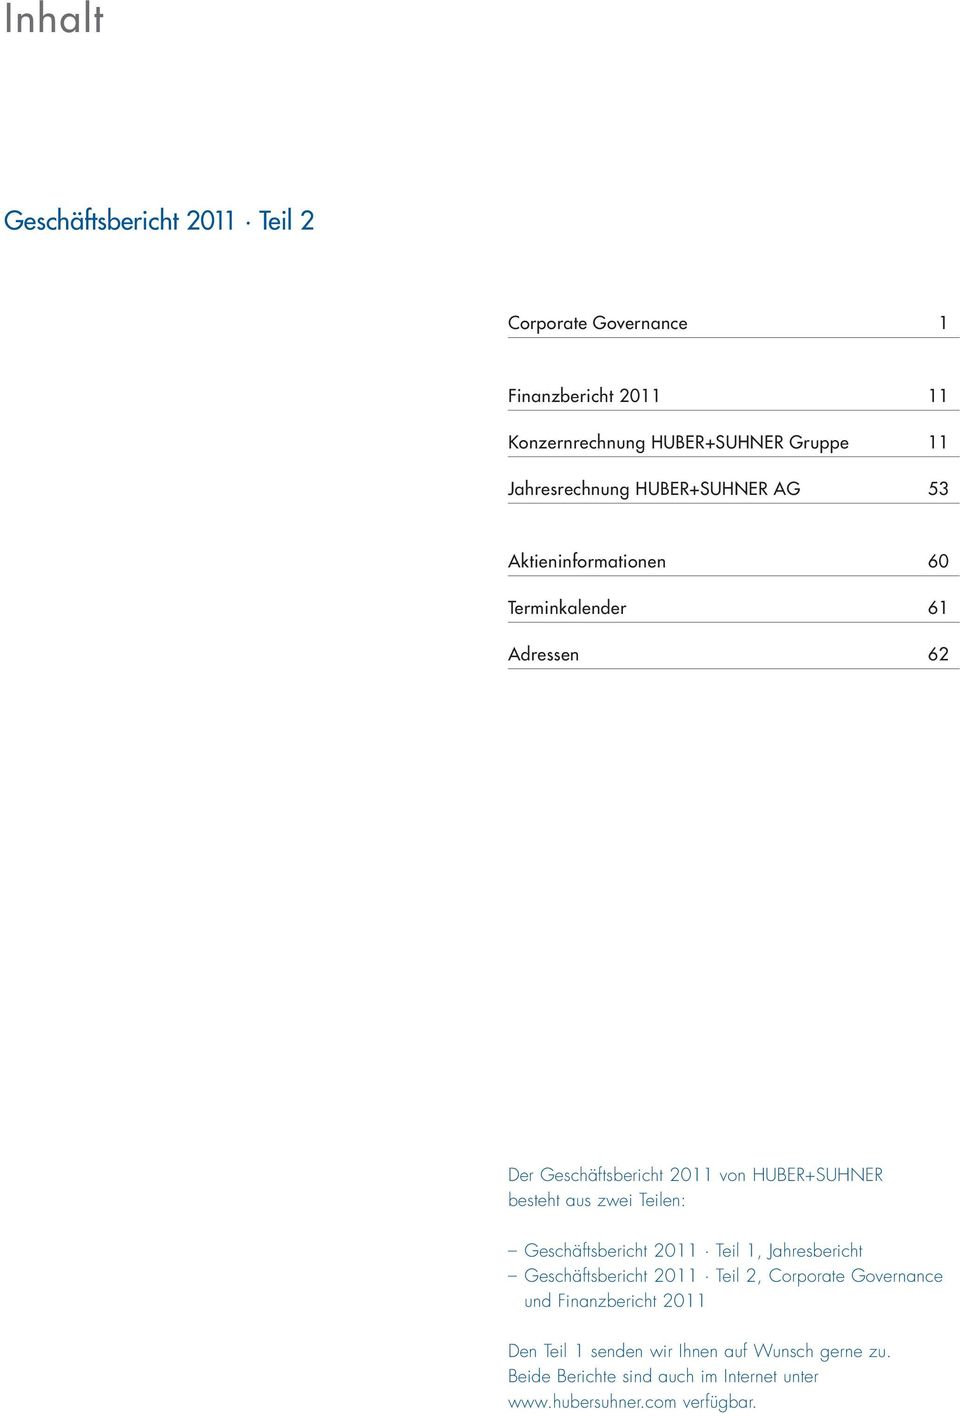 HUBER+SUHNER besteht aus zwei Teilen: Geschäftsbericht 2011 Teil 1, Jahresbericht Geschäftsbericht 2011 Teil 2, Corporate